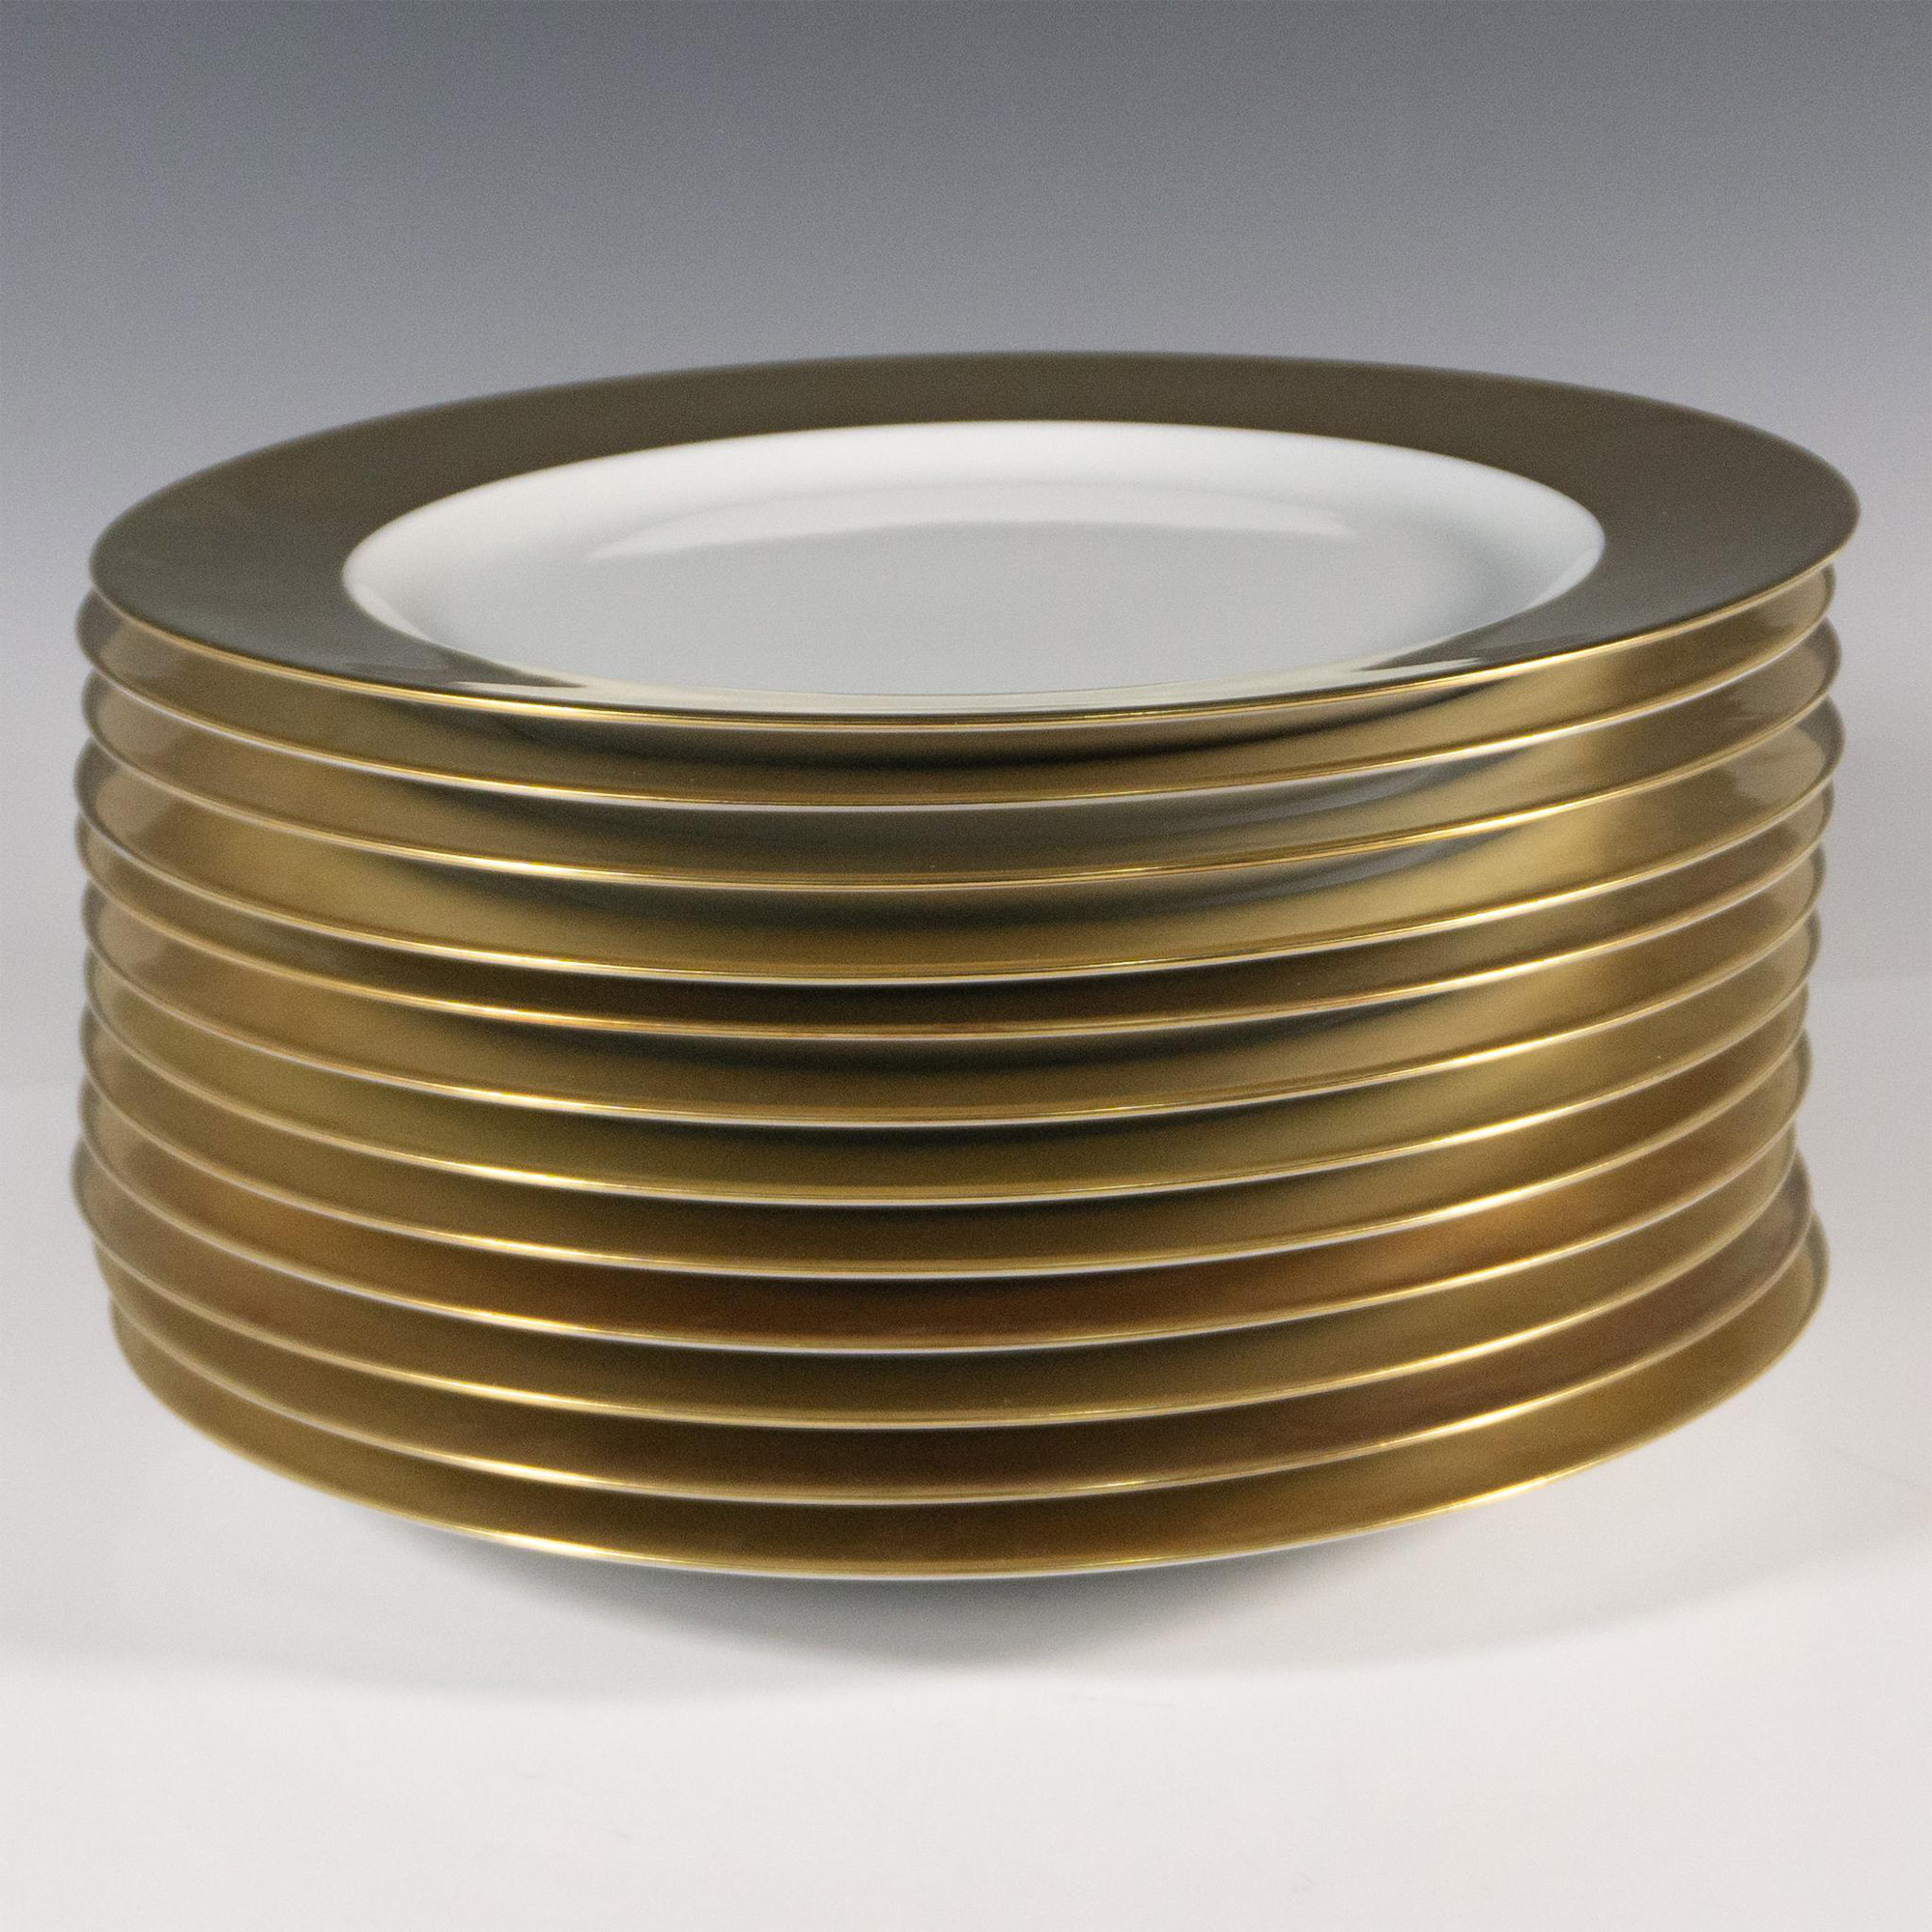 12pc Bernardaud Limoges Gold-Rimmed Dinner Plates - Image 3 of 3